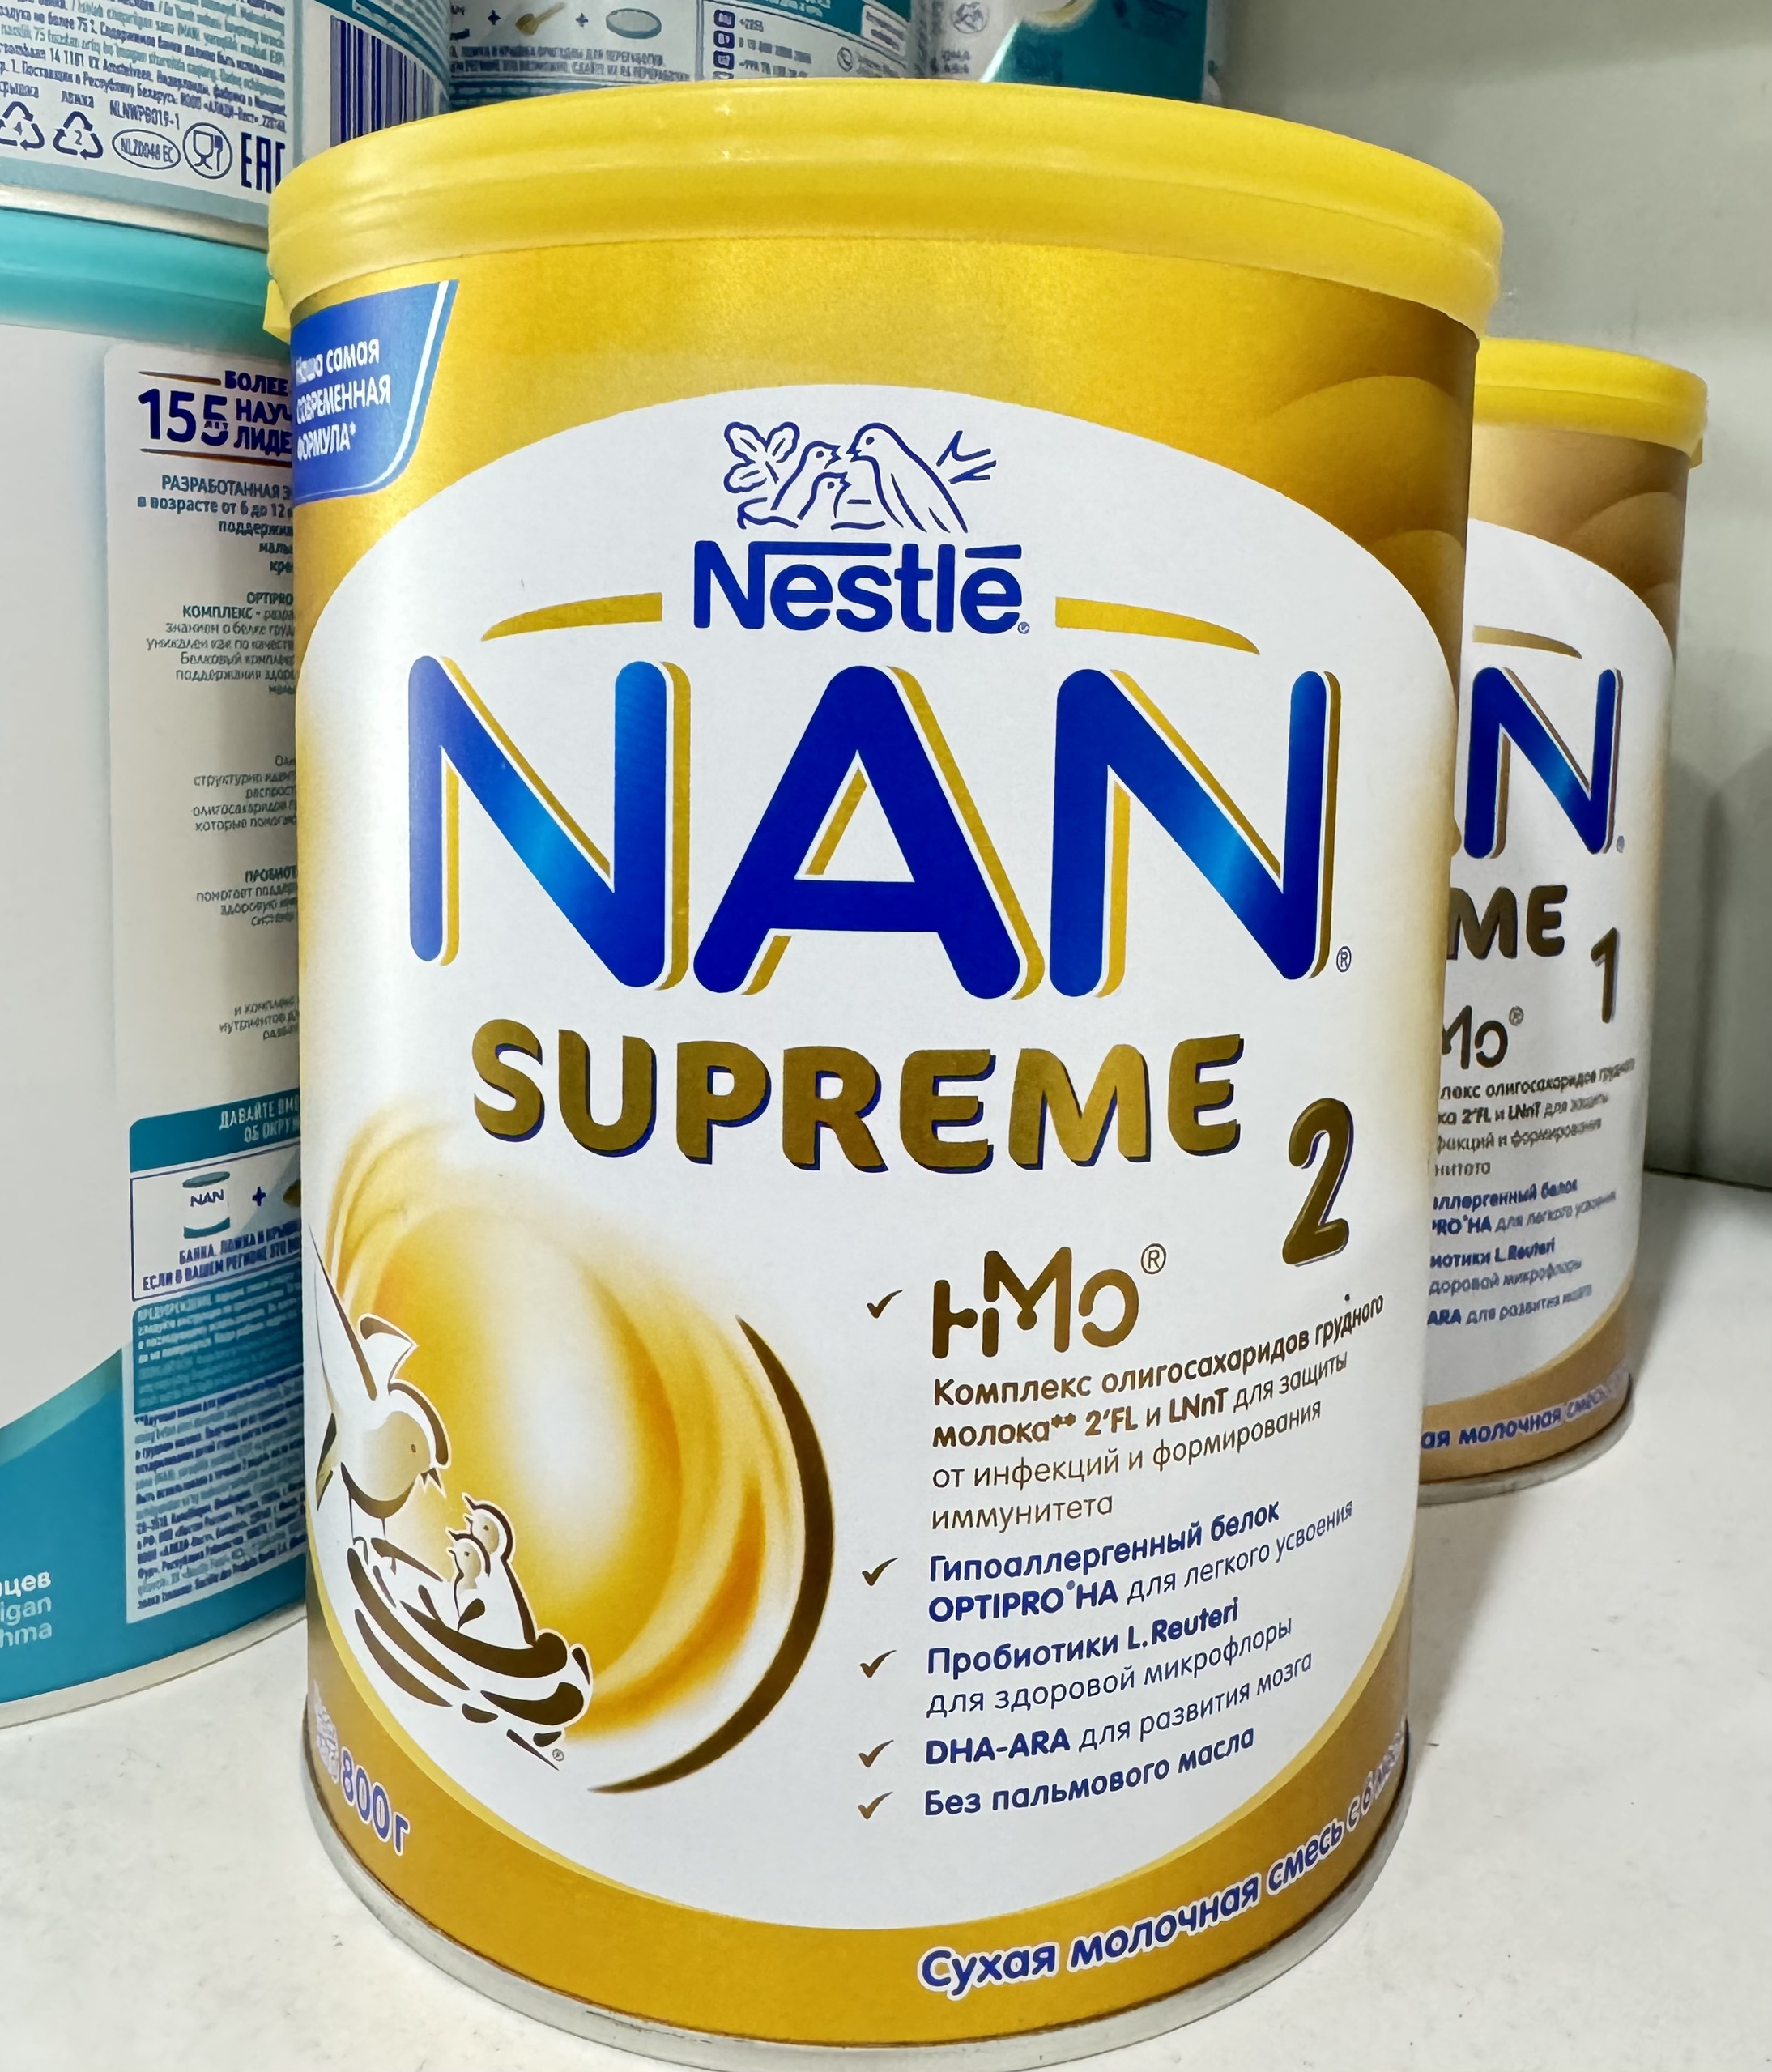 Sữa Nan Nga Supreme HMO Số 2 800g (Nan Vàng Nội Địa Nga)